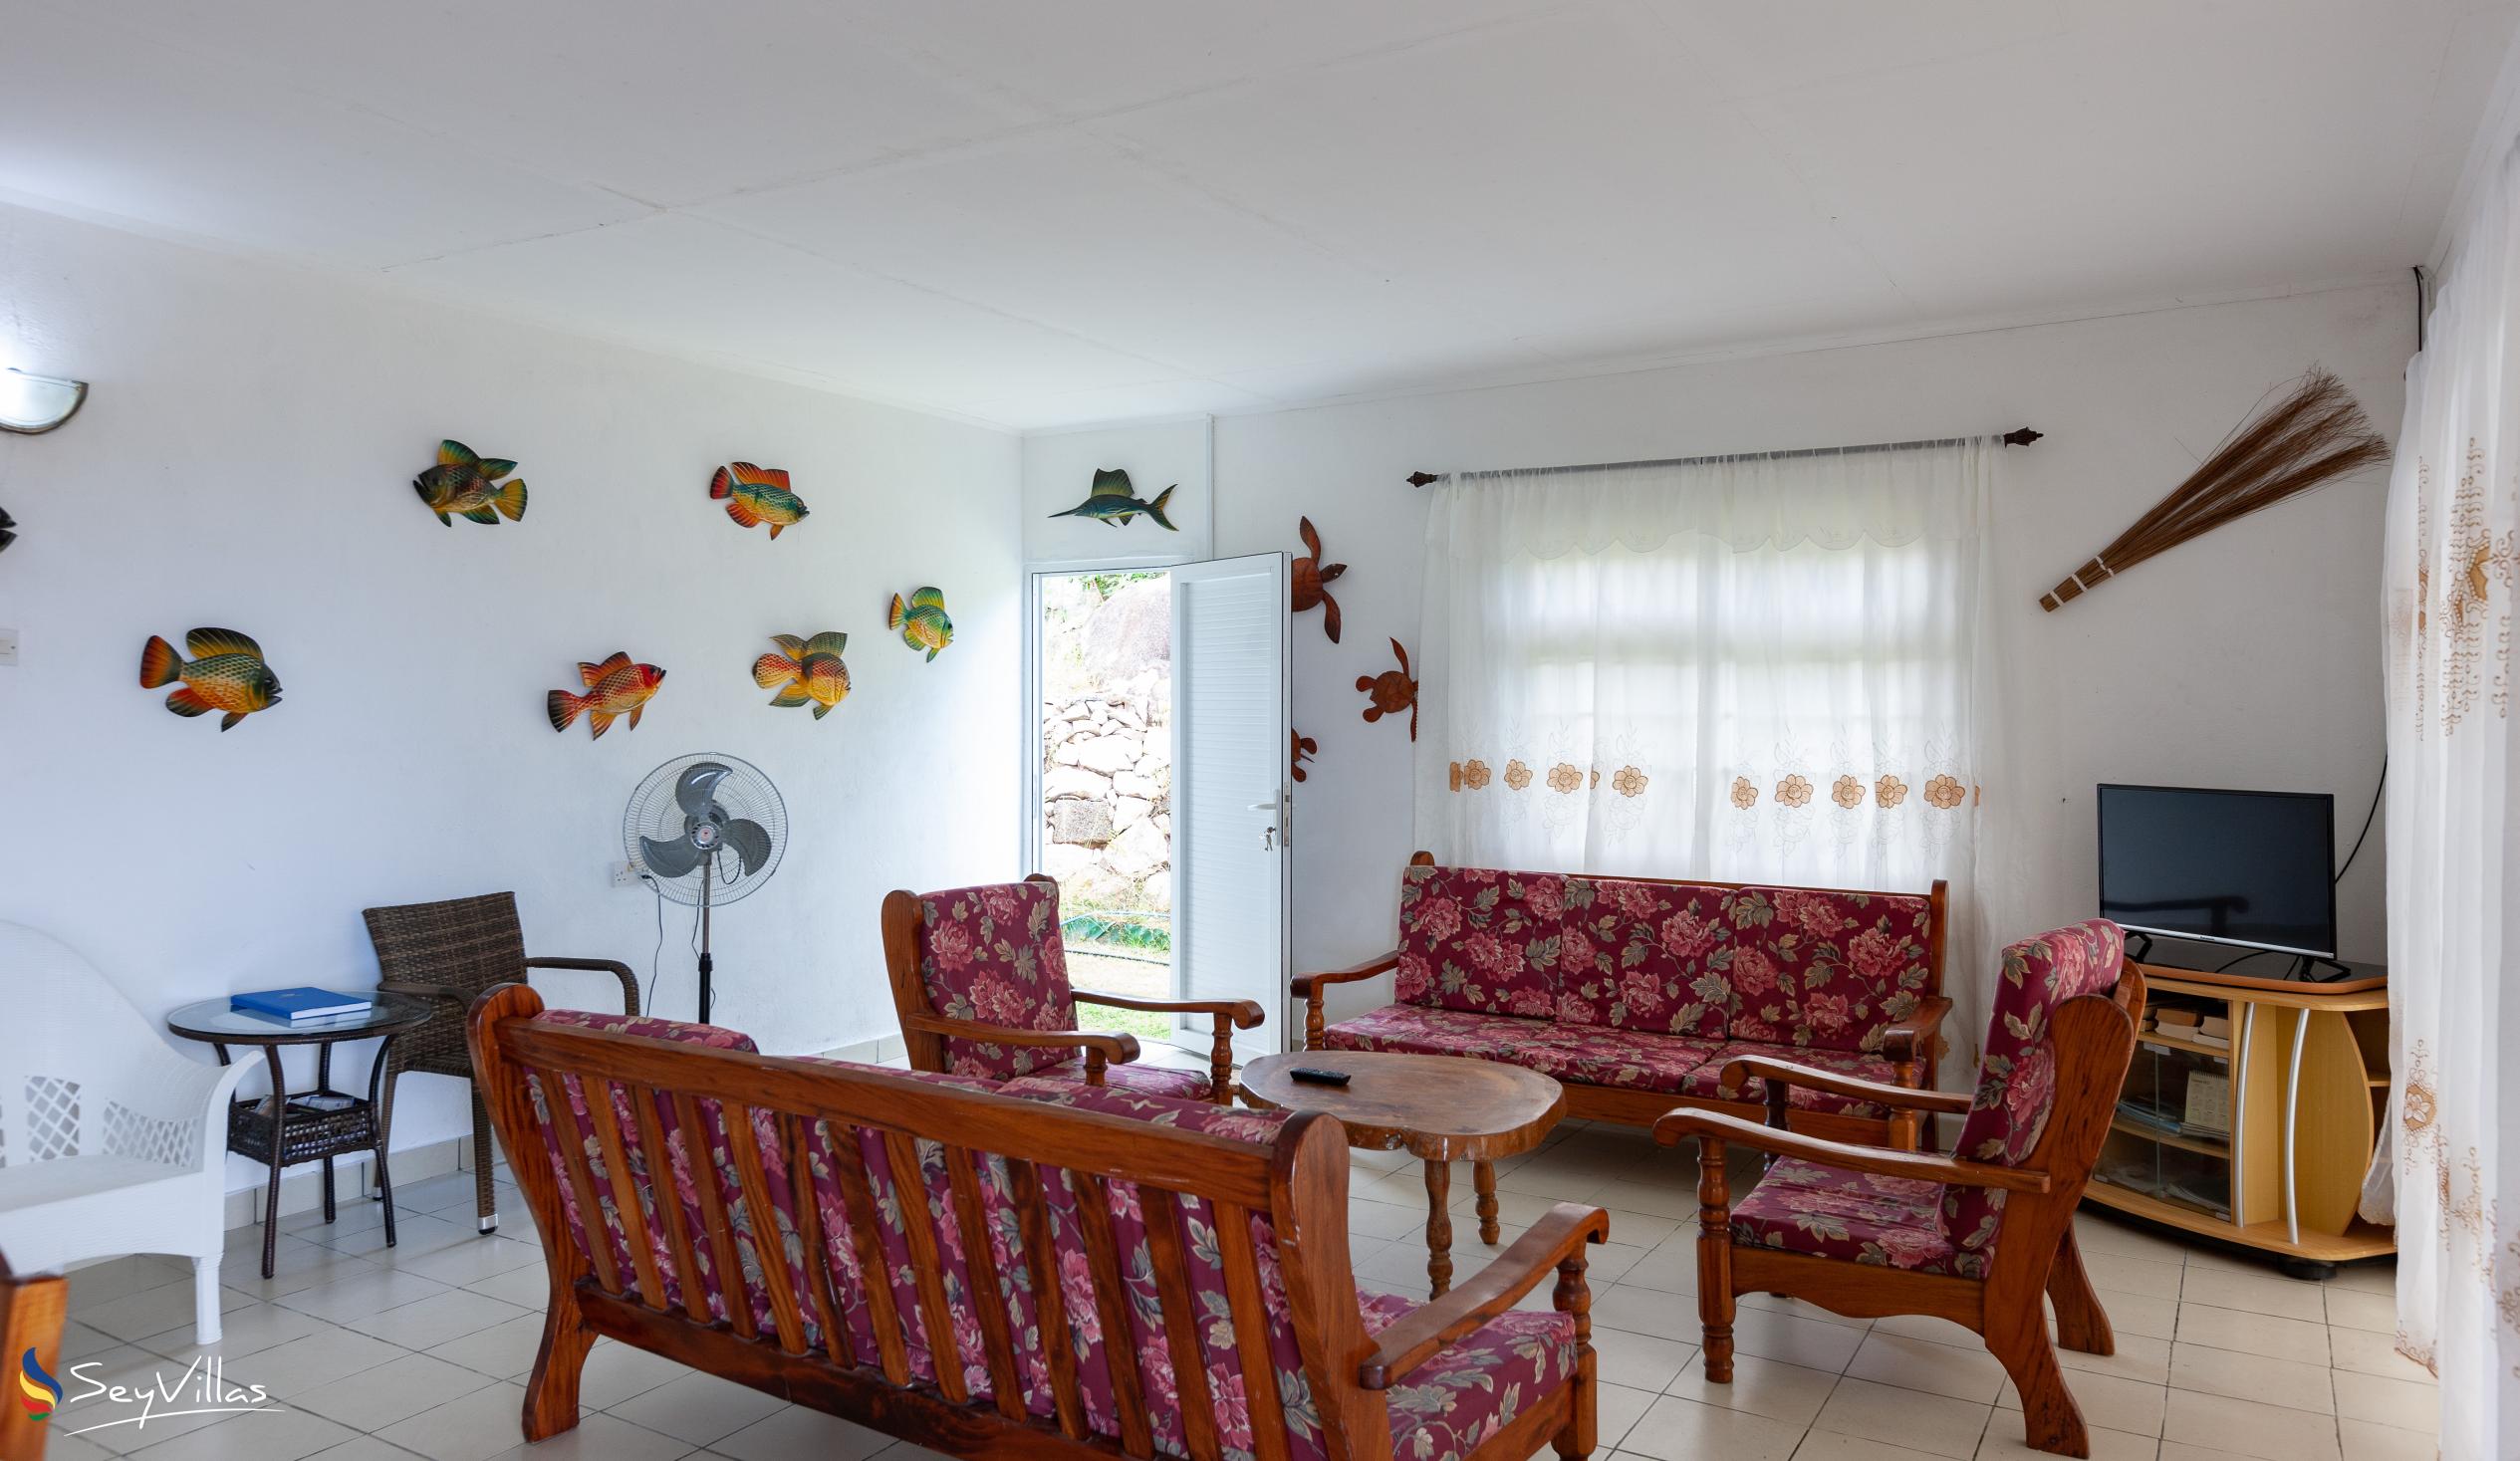 Photo 26: Maison du Soleil - Indoor area - Praslin (Seychelles)